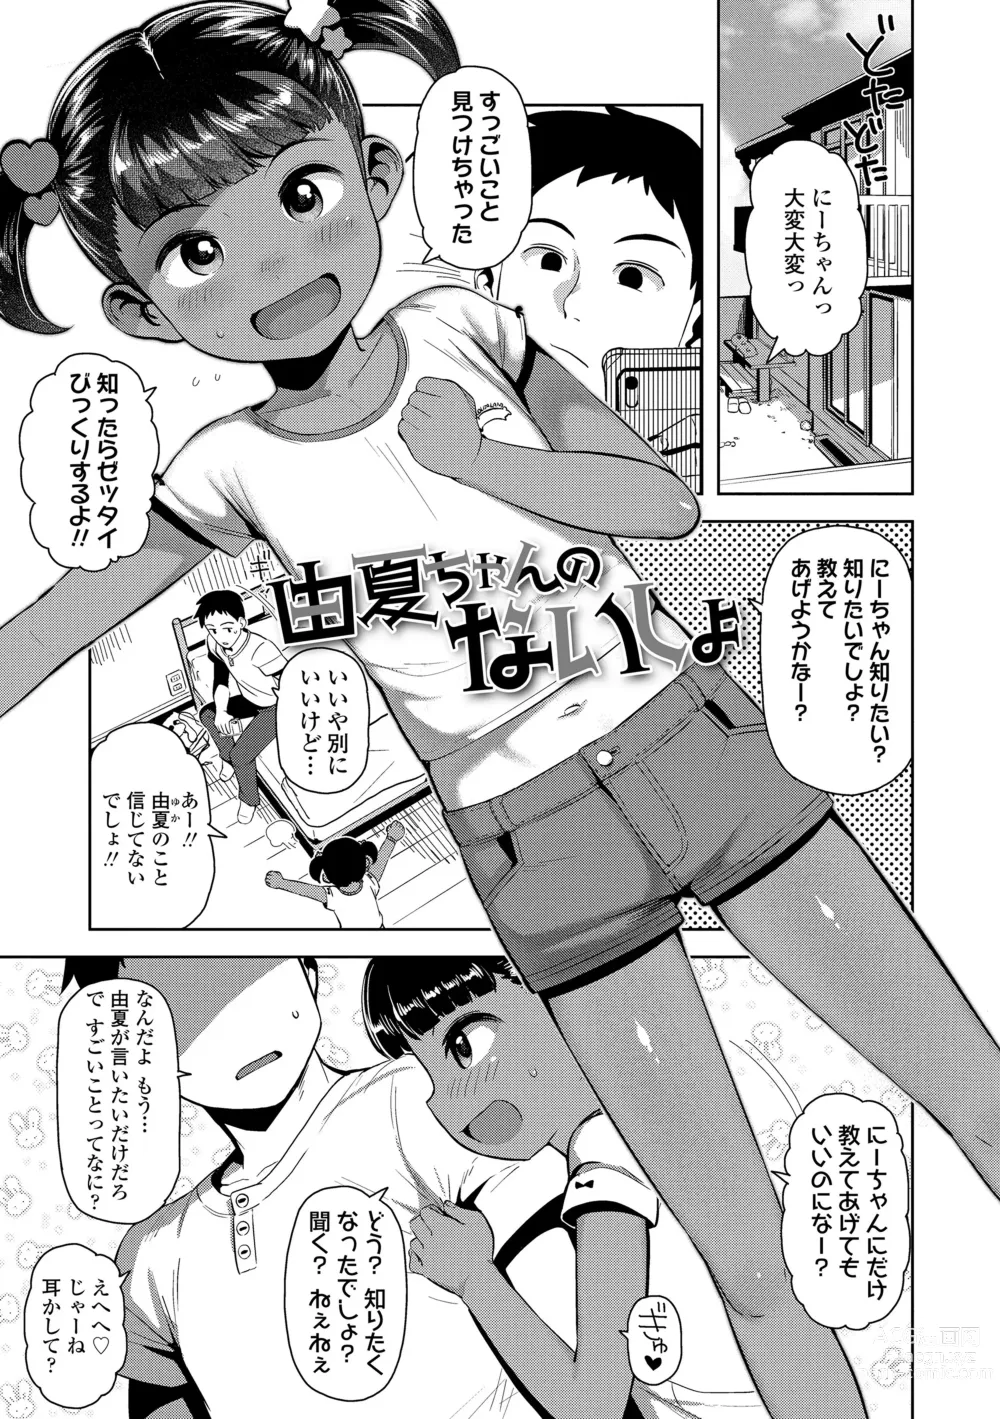 Page 173 of manga Chitchakute ohisama no nioi